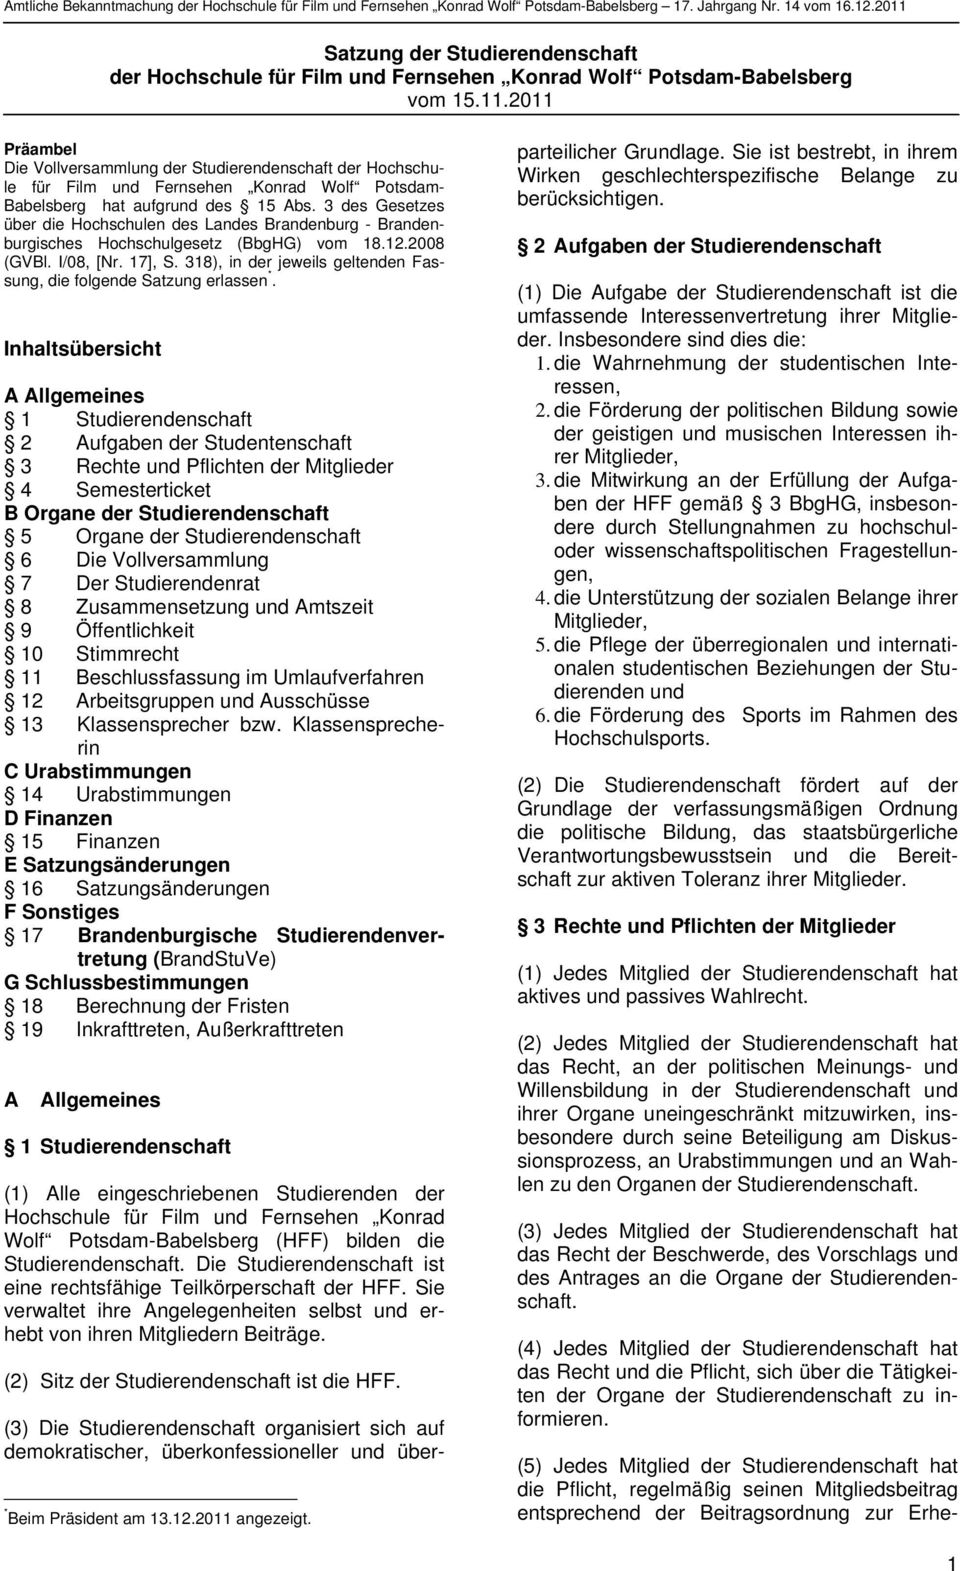 3 des Gesetzes über die Hochschulen des Landes Brandenburg - Brandenburgisches Hochschulgesetz (BbgHG) vom 18.12.2008 (GVBl. I/08, [Nr. 17], S.